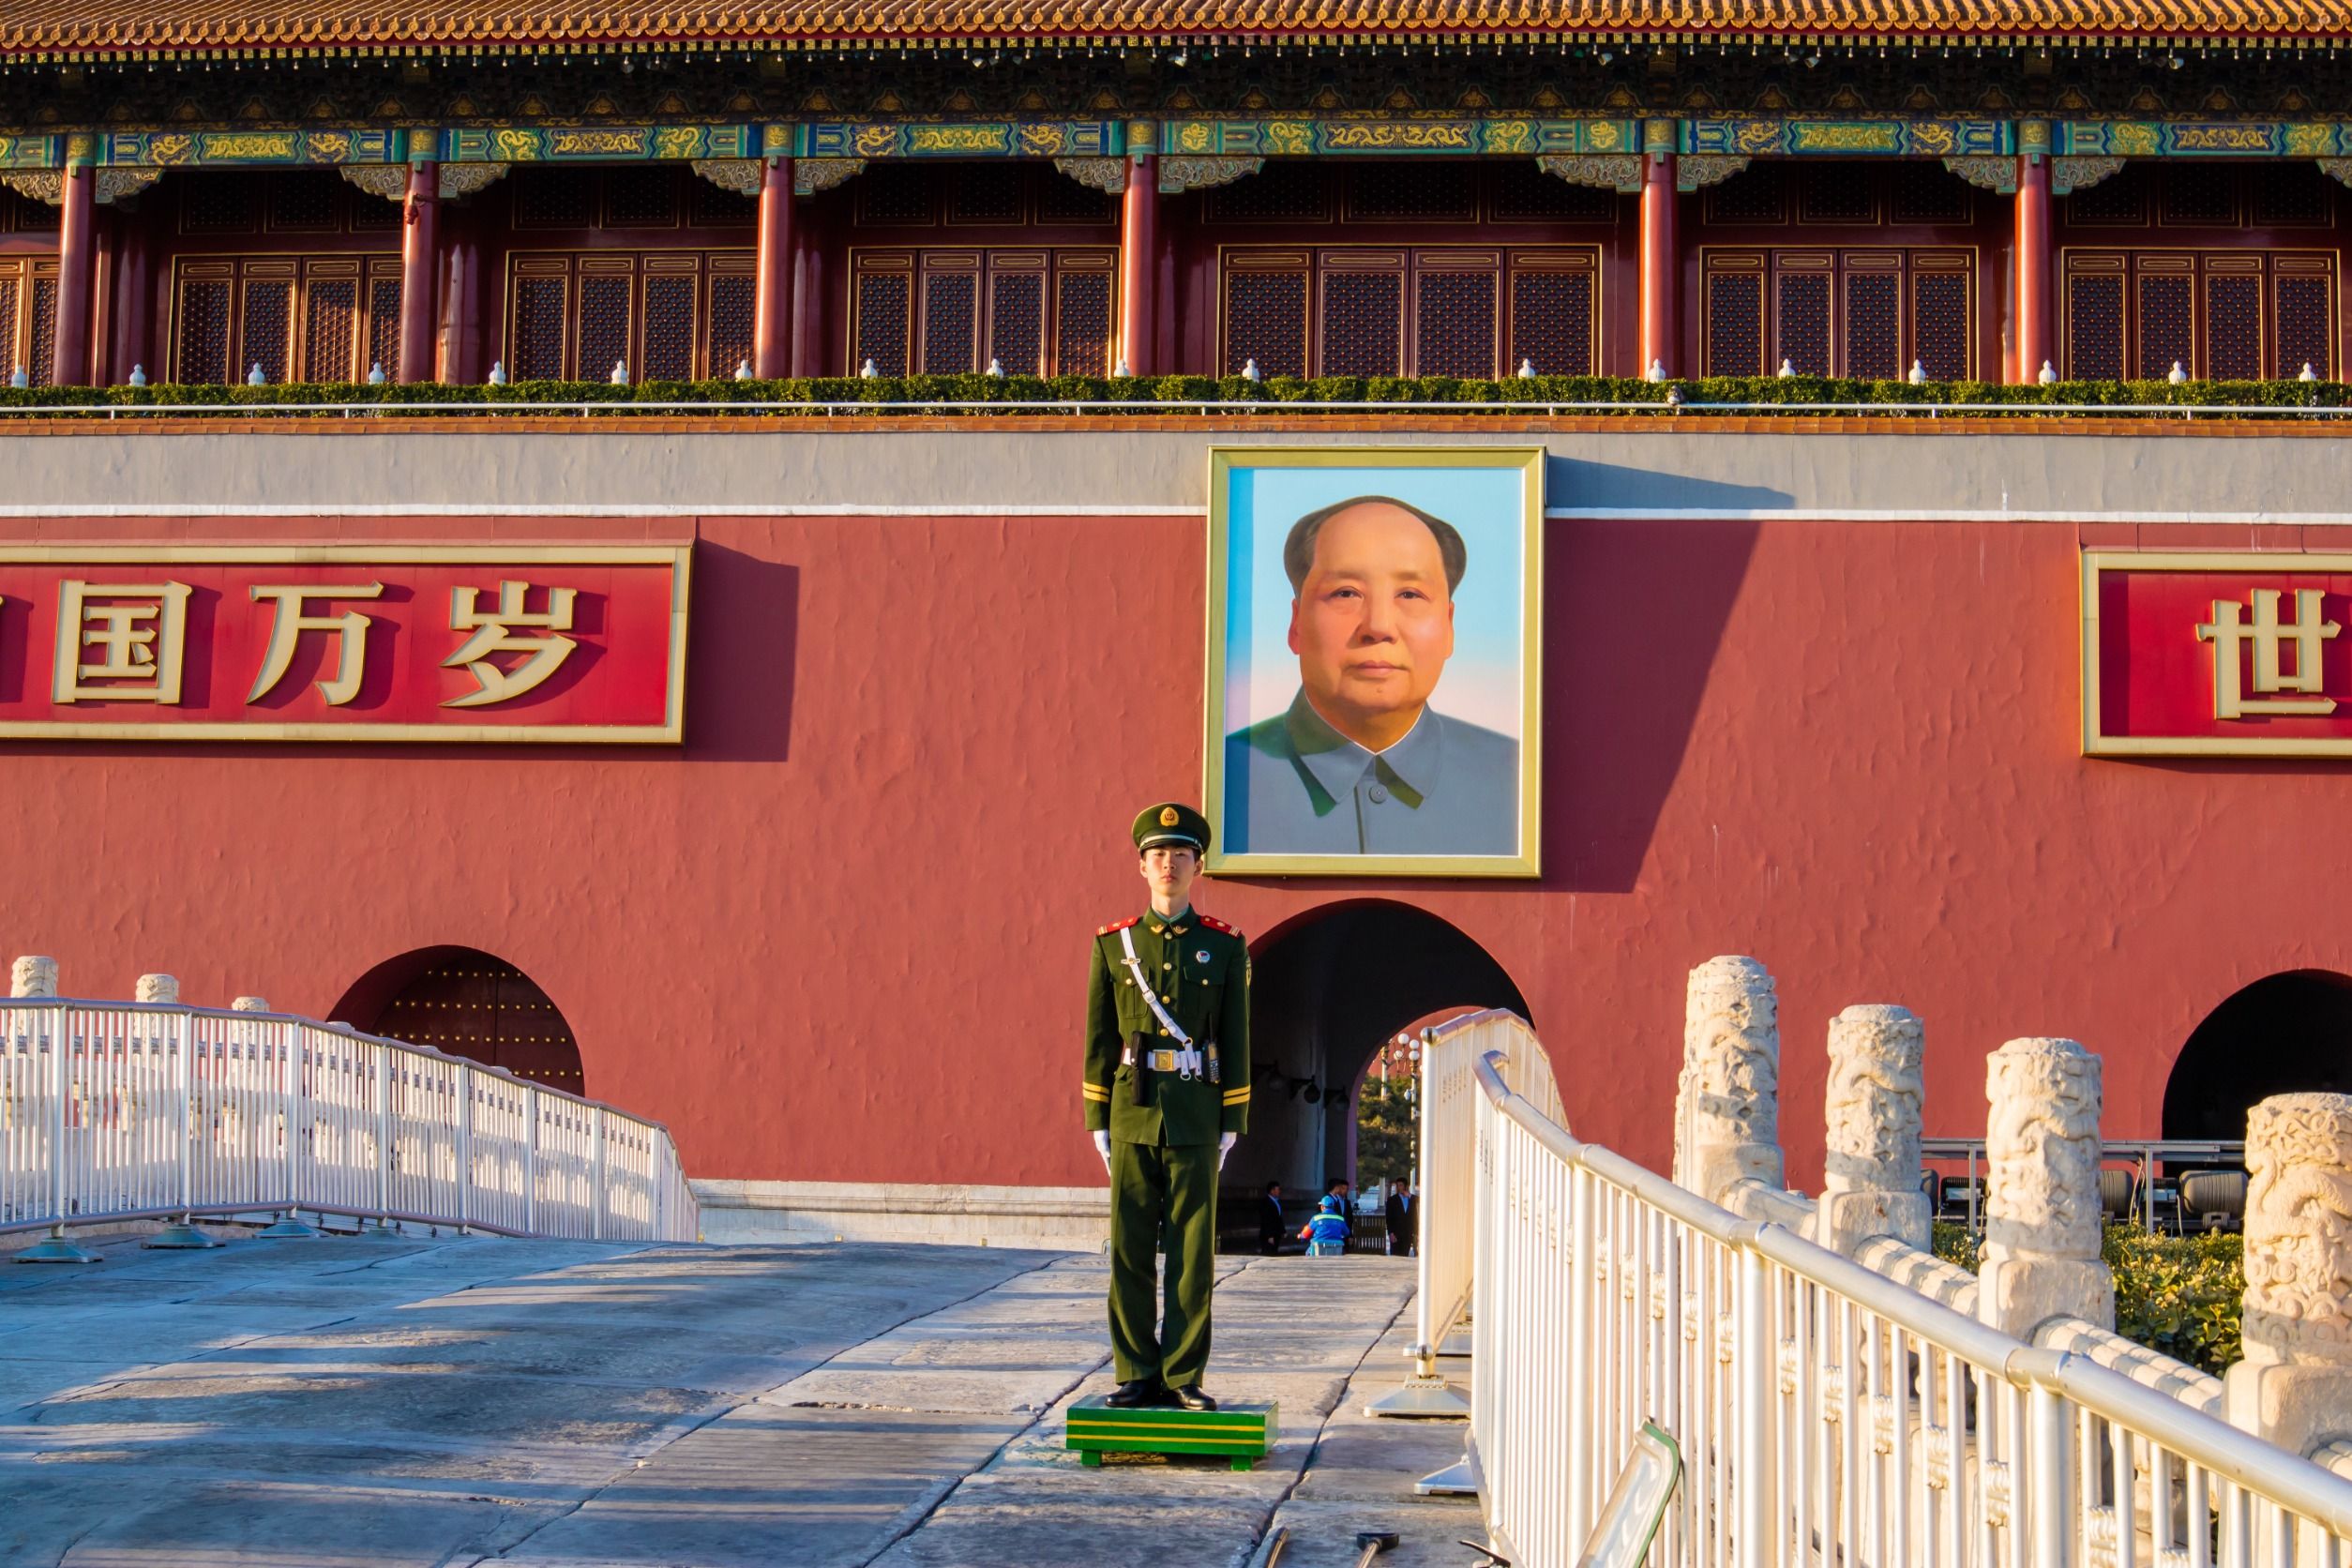 Puerta principal de la ciudad prohibida, Beijing (China), con la imagen de Mao Zedong.